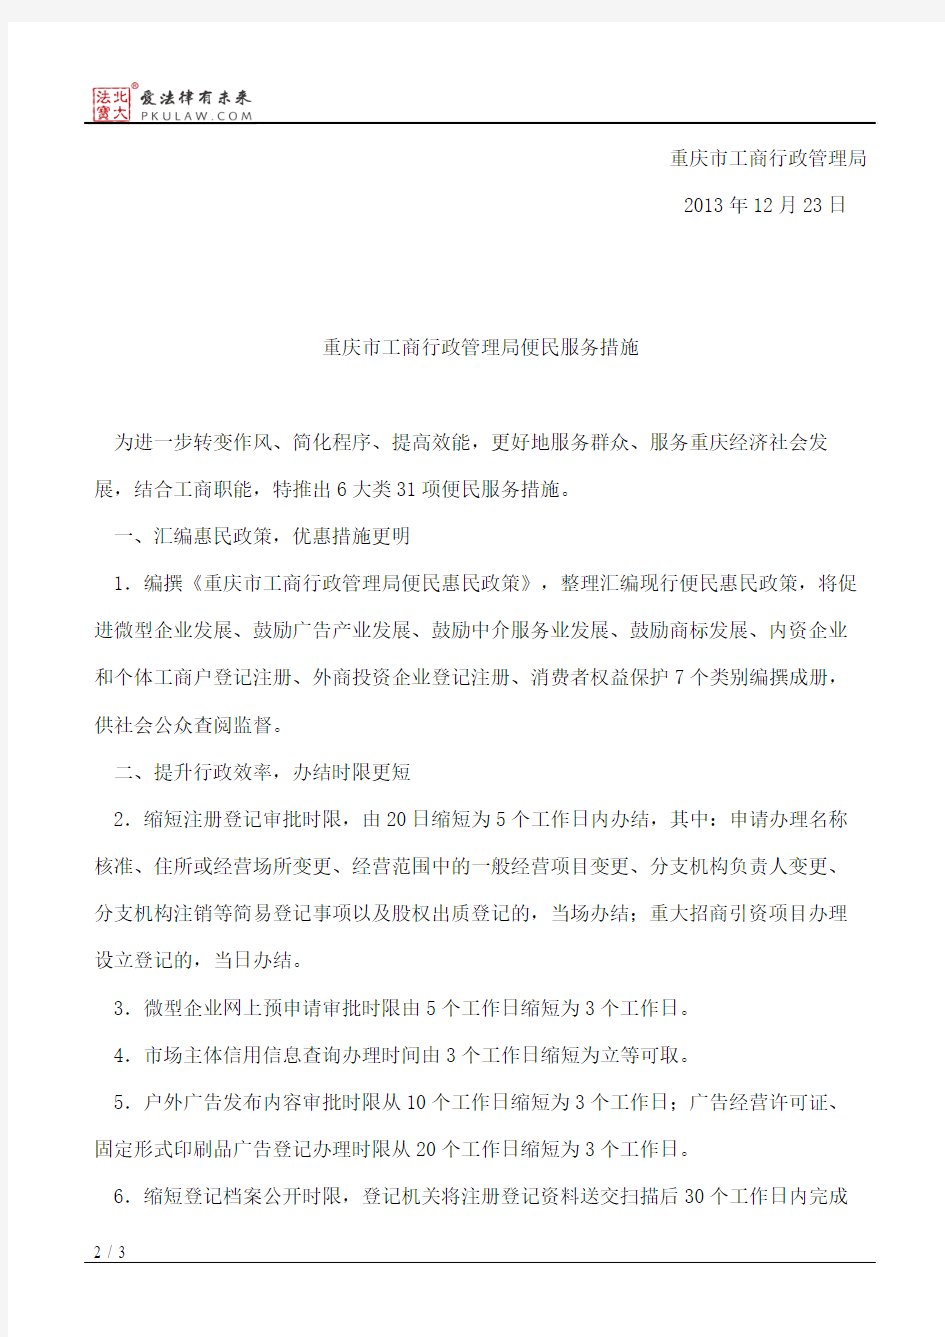 重庆市工商行政管理局关于印发便民服务措施的通知